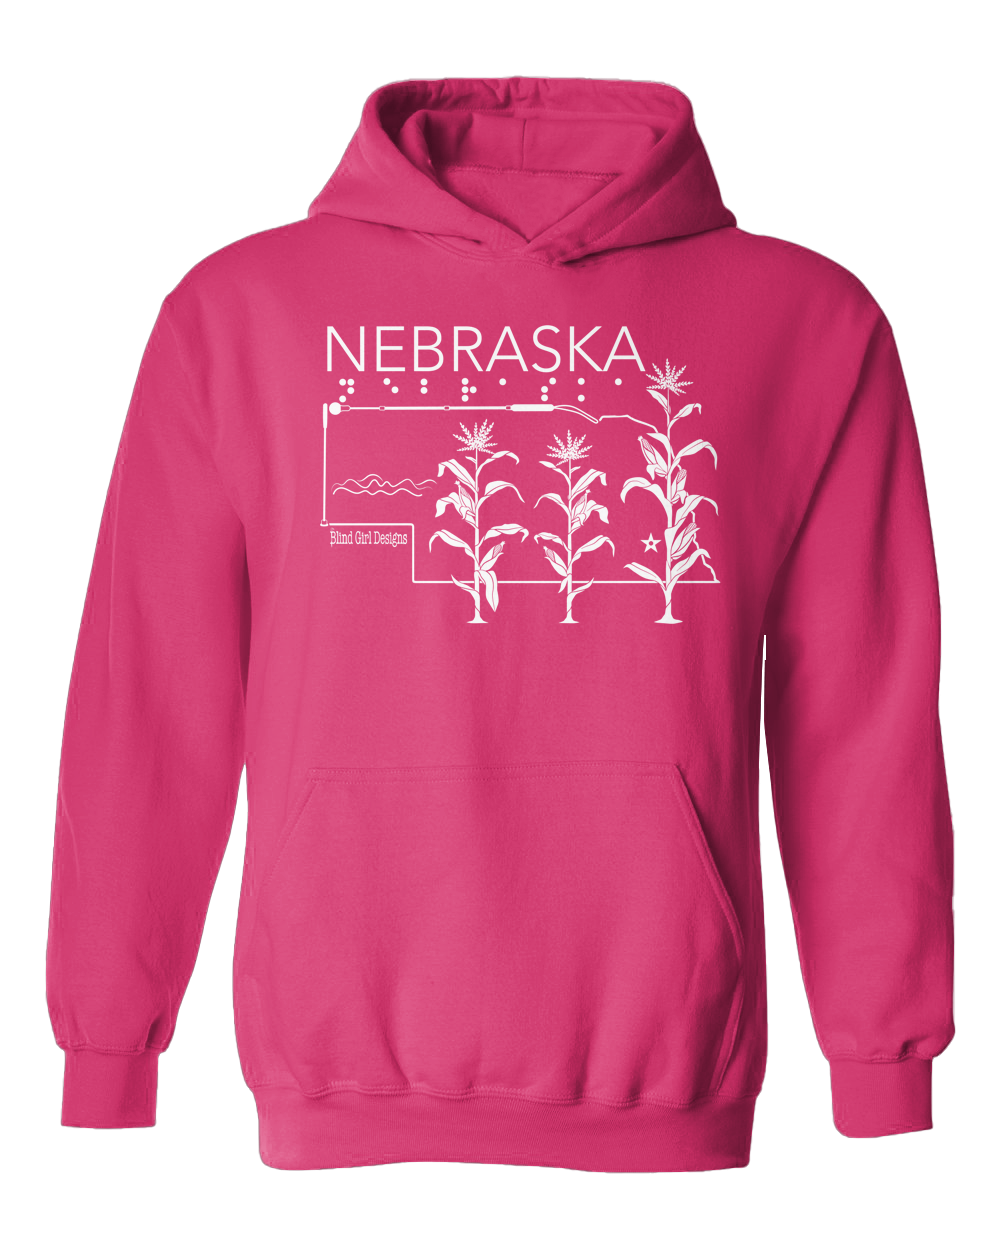 New! 3-D tactile Nebraska State Hoodie - Pink